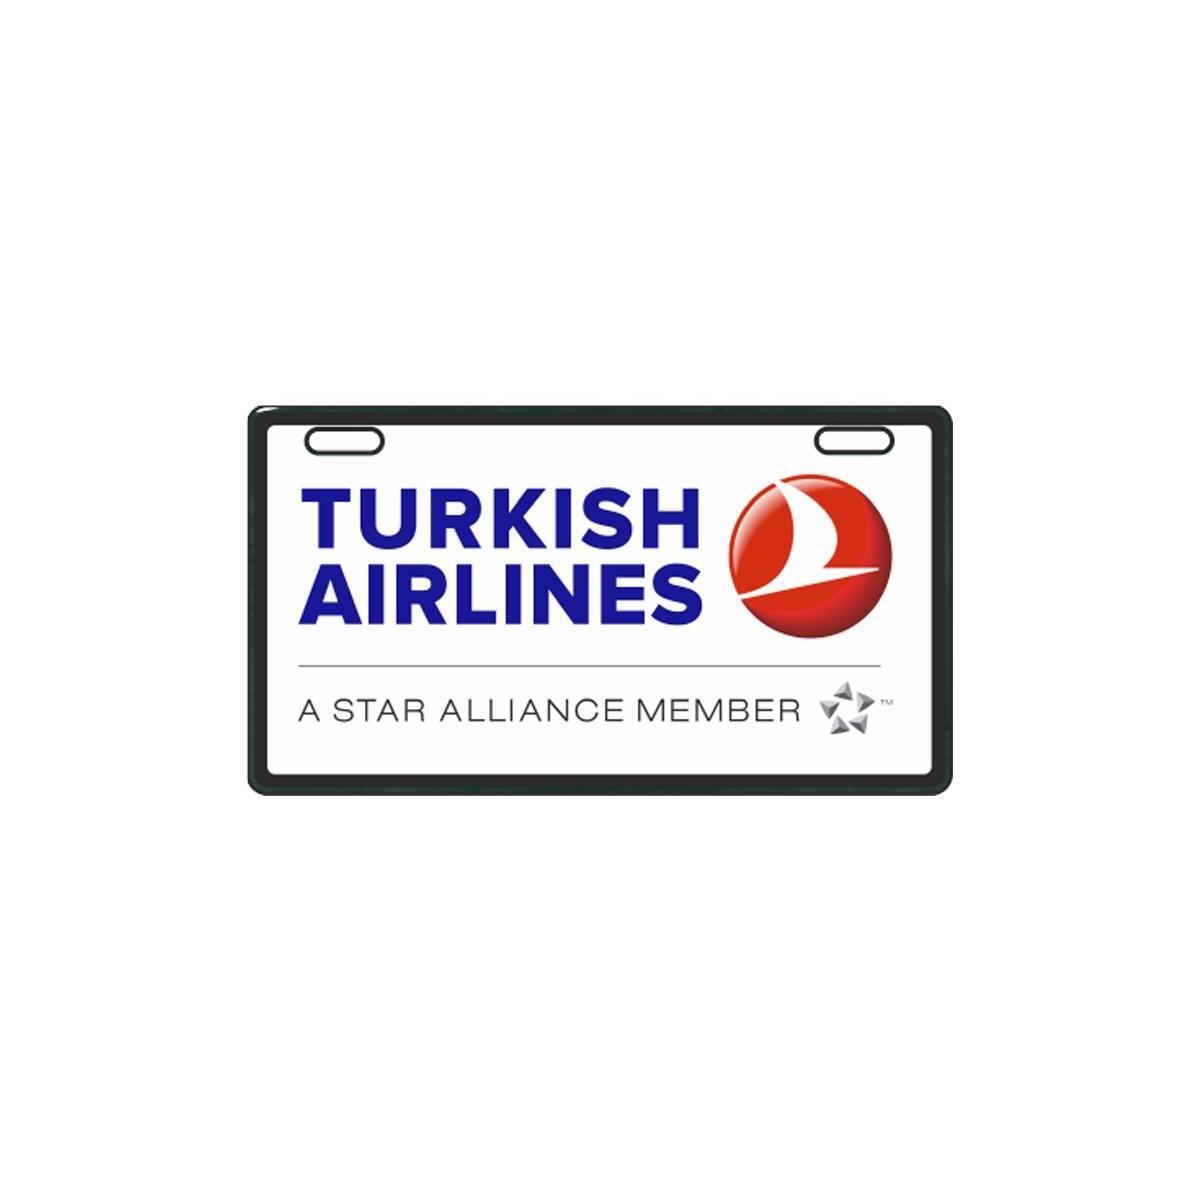 Sevenkardeşler Turkısh Airlines E-Bike Plakalık